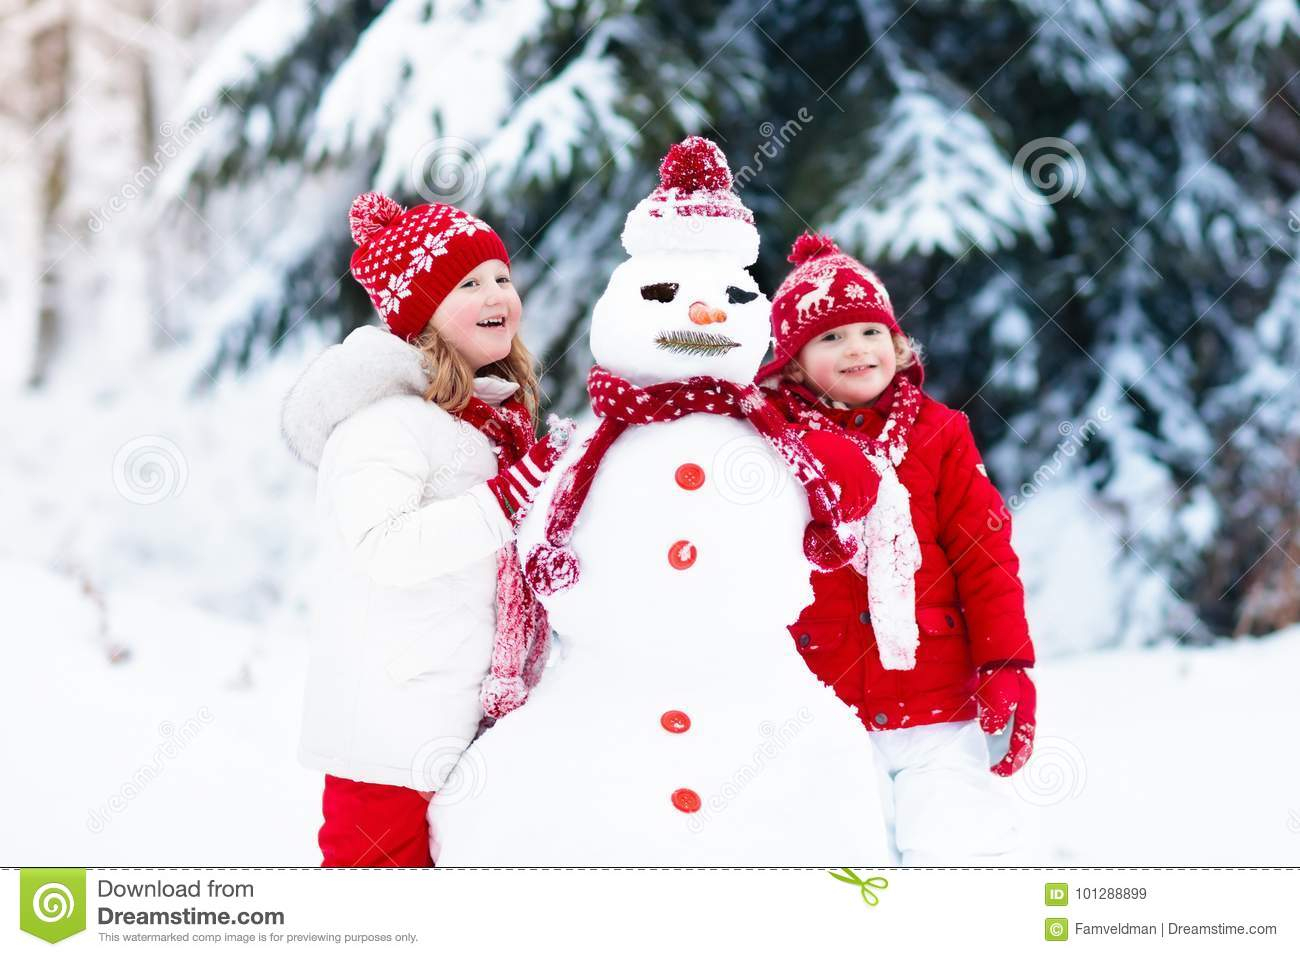 Kinder, Die Schneemann Errichten Kinder Im Schnee Antreiben In Einen verwandt mit Bilder Kinder Im Schnee